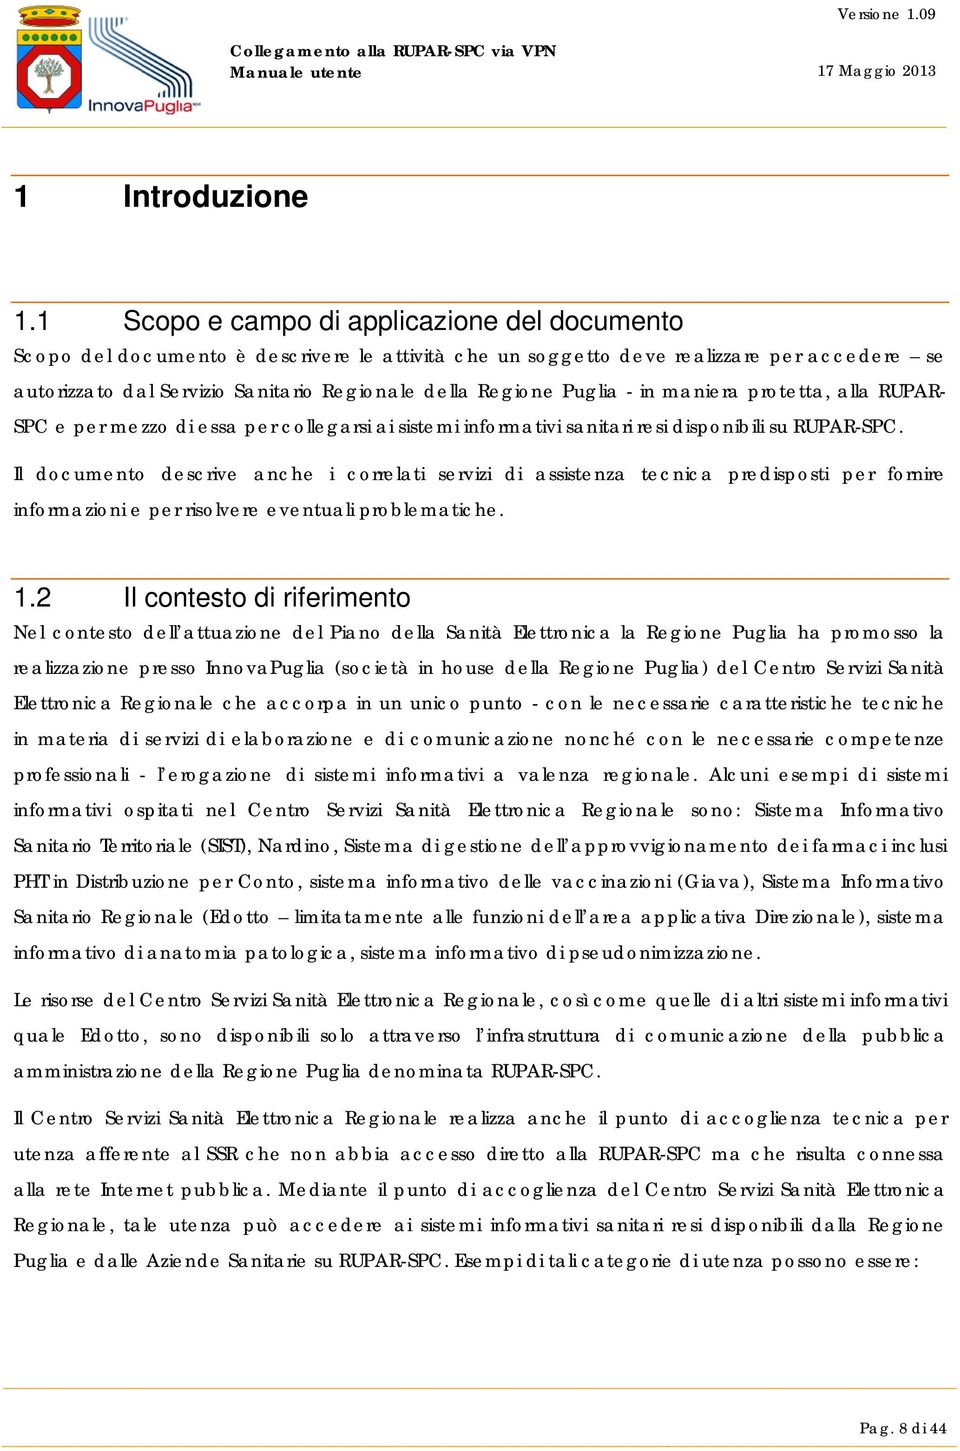 Puglia - in maniera protetta, alla RUPAR- SPC e per mezzo di essa per collegarsi ai sistemi informativi sanitari resi disponibili su RUPAR-SPC.